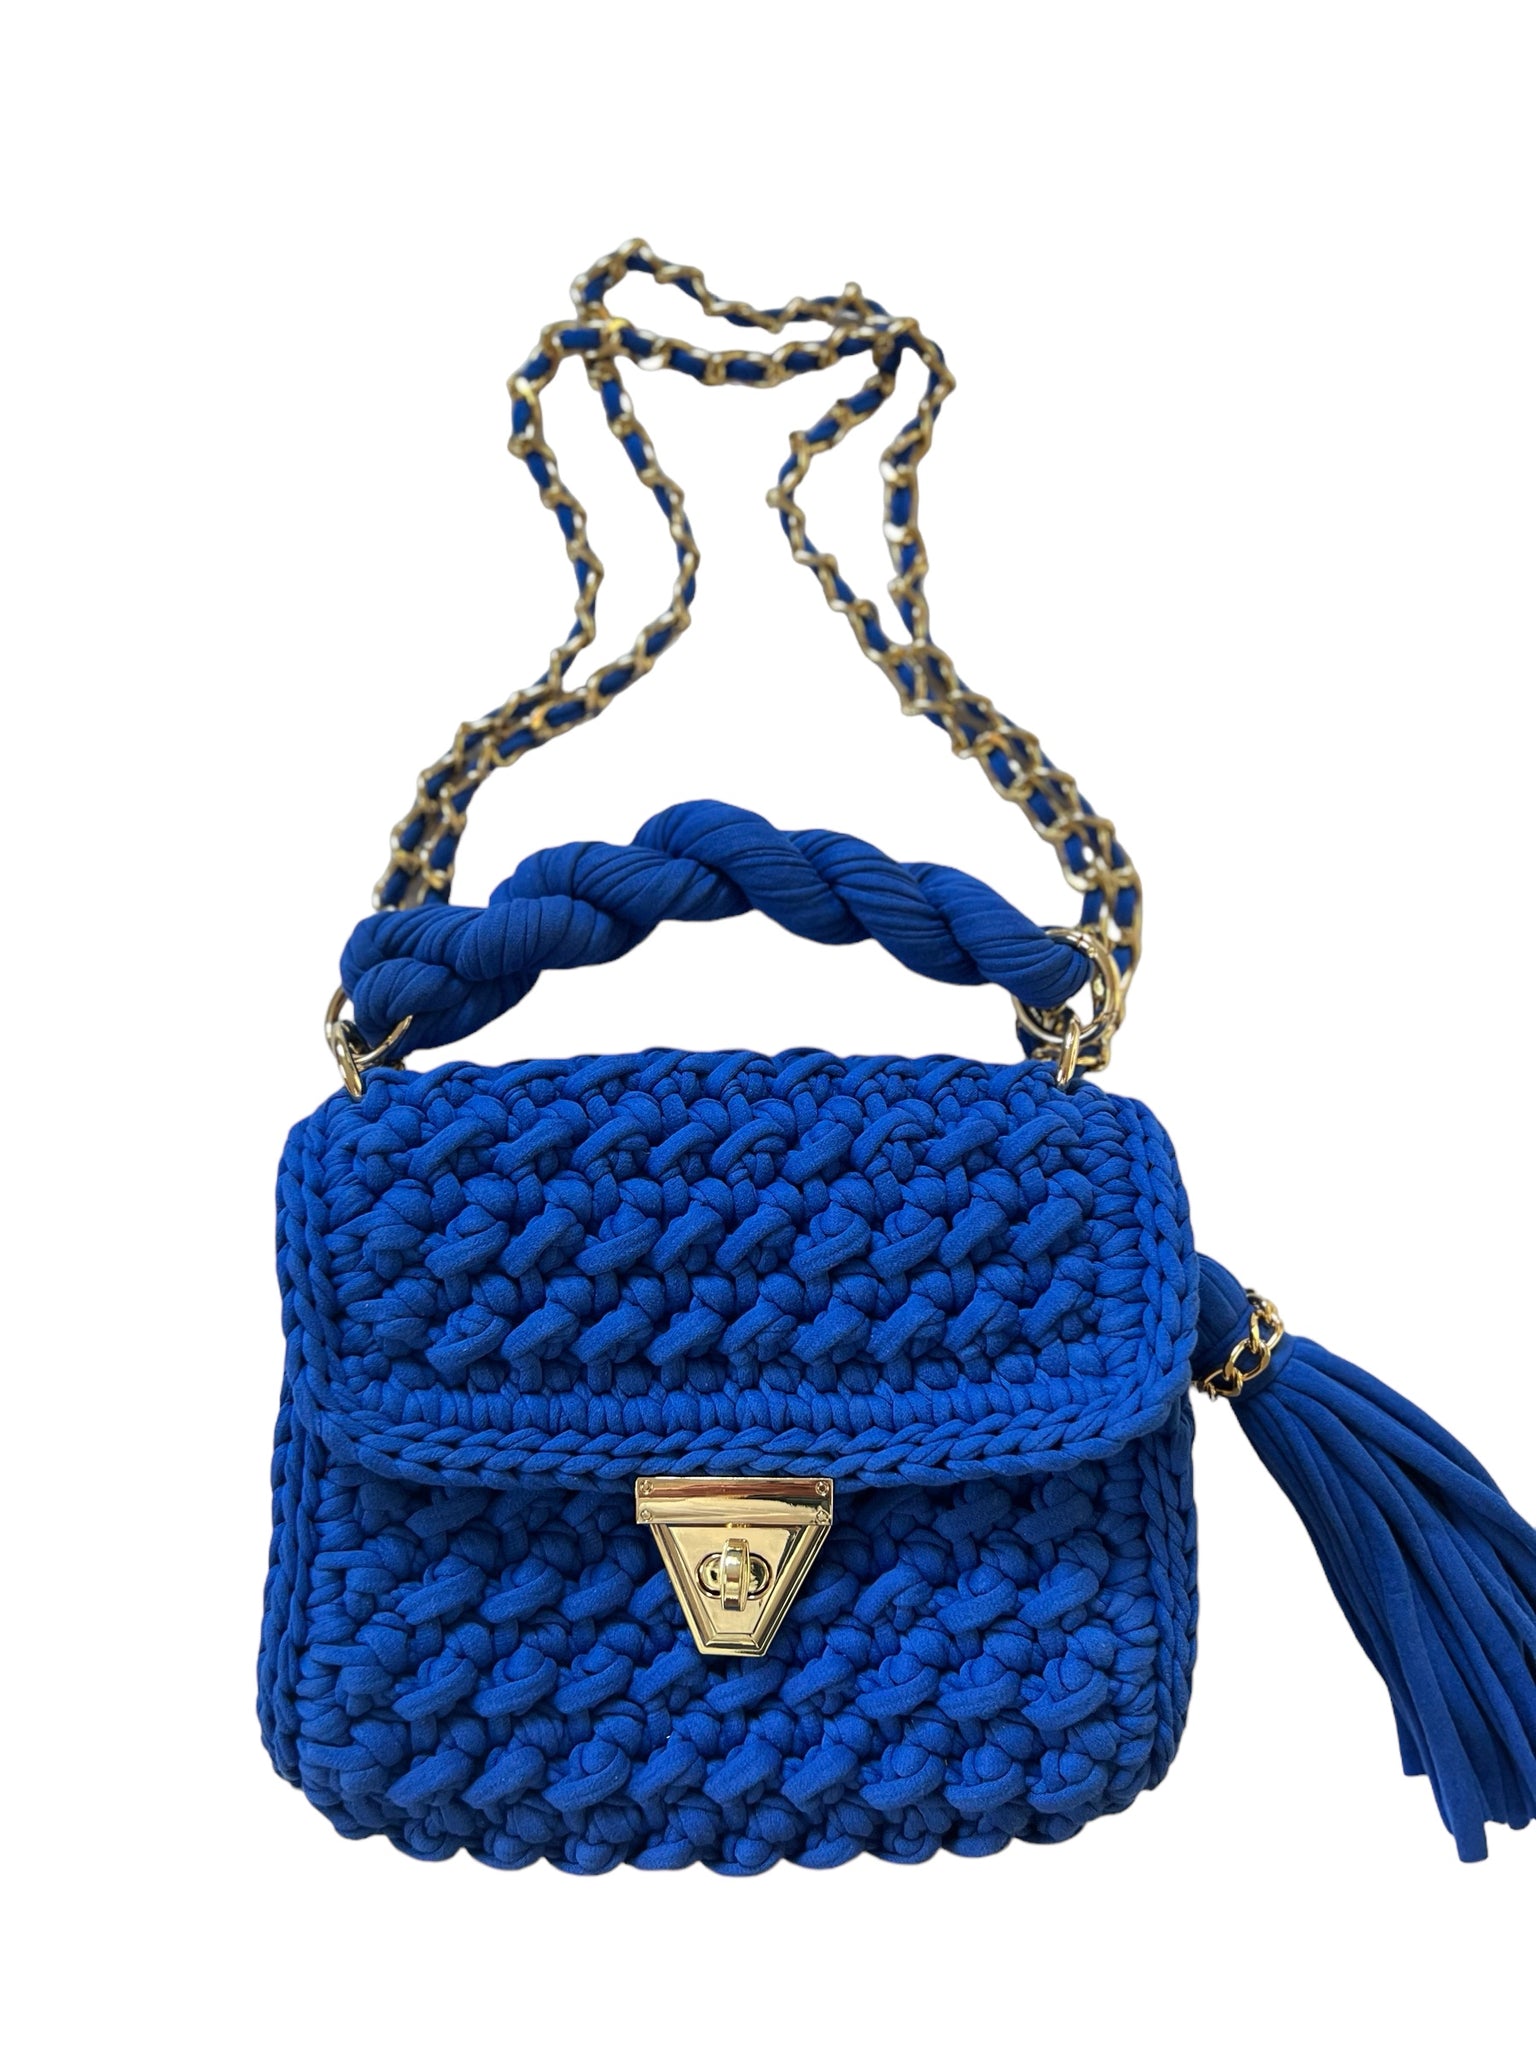 Utgående modell Archiella Knitted Handbag Statement Blue